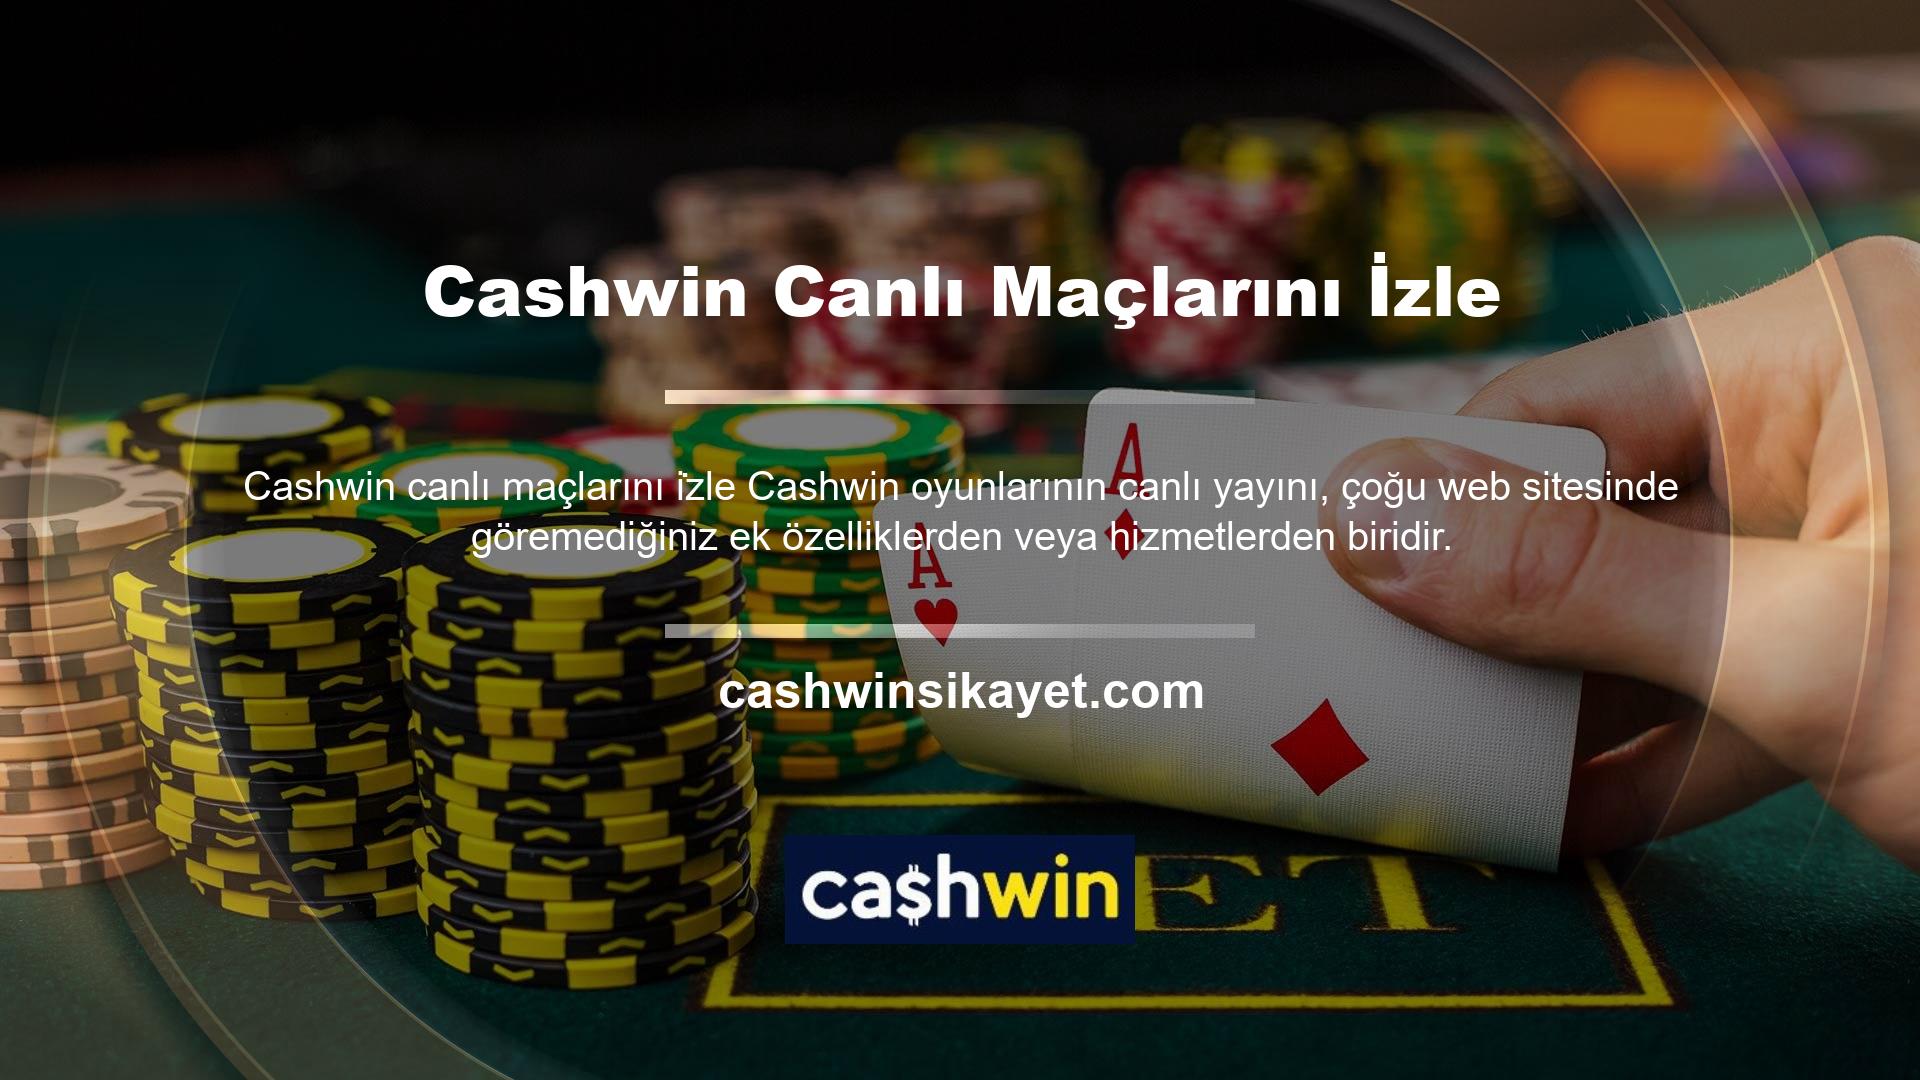 Bu siteye veya sitenin ana sayfasına bakarsanız Cashwin TV şeklinde bir bölümün olduğunu göreceksiniz